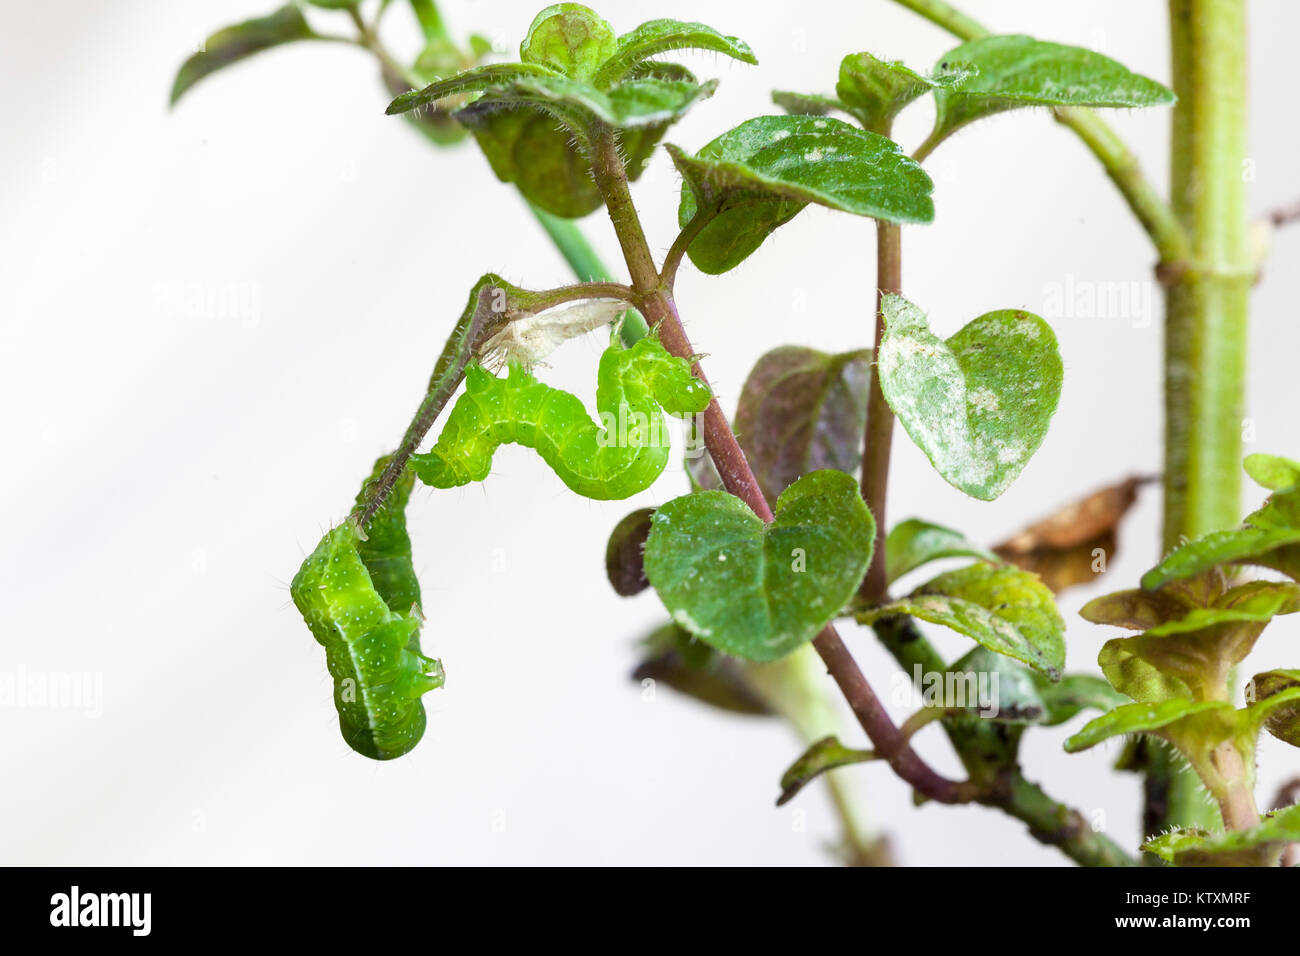 Zwei grüne Kohl Loopers, Trichoplusia ni, Fütterung auf die Blätter einer Topfpflanzen Minze Anlage. Lepidoptera, Noctuidae, mottenlarven Stockfoto